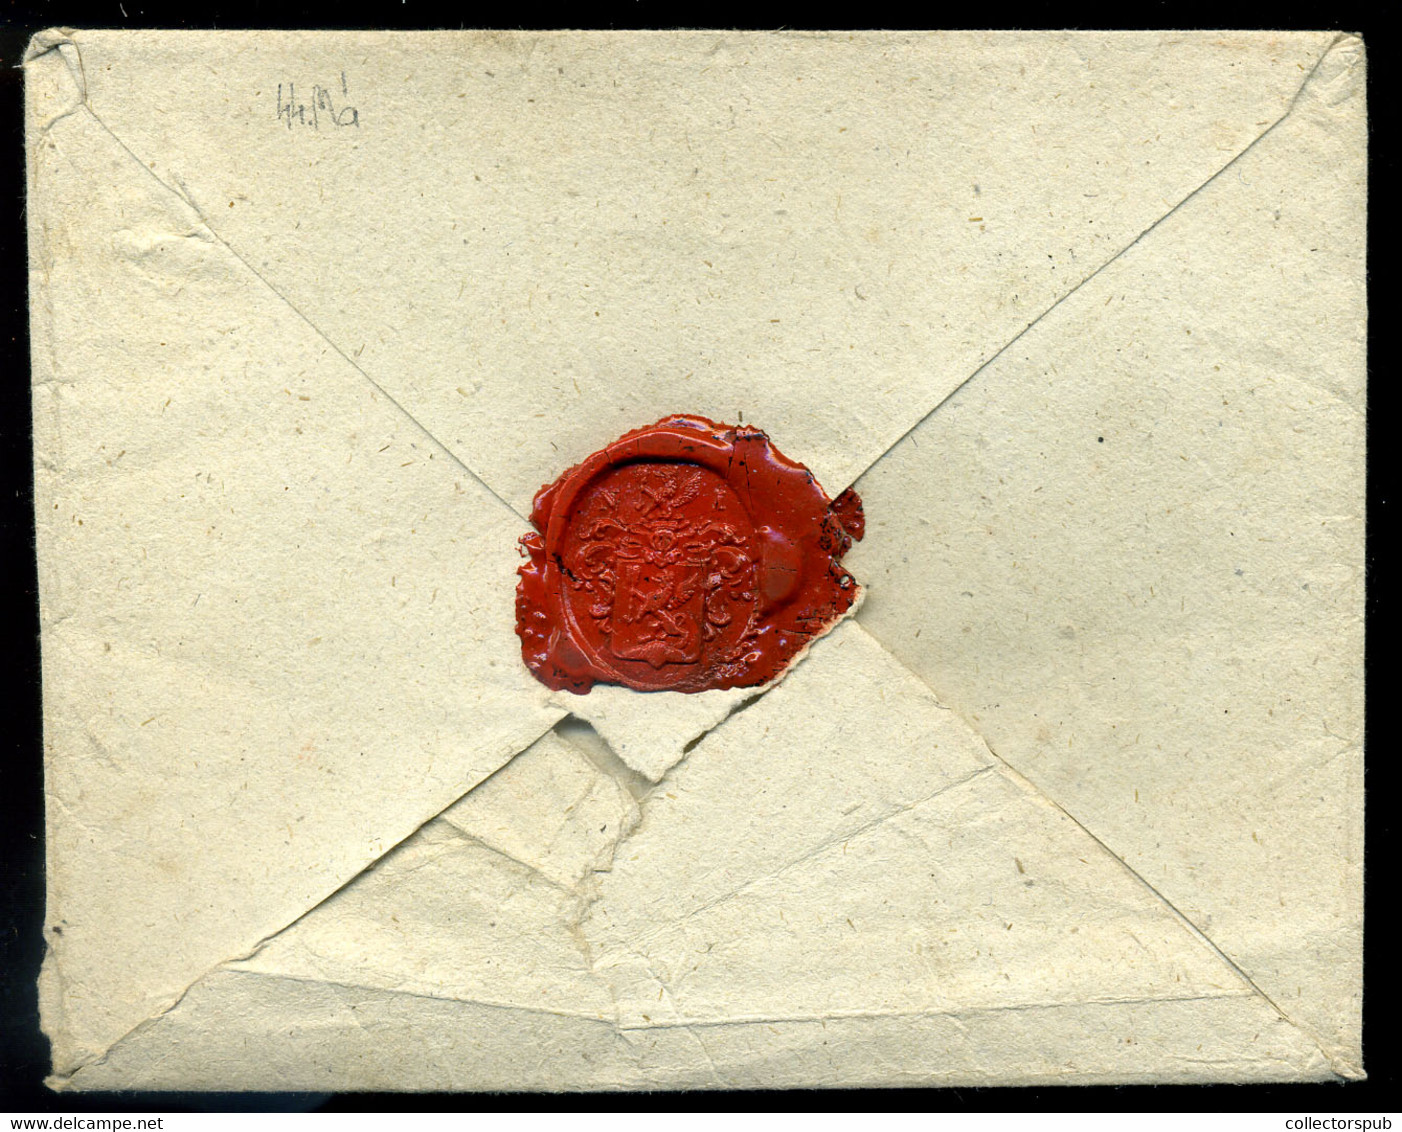 VÁC  Dekoratív portós levél "WAITZEN" Eperjesre küldve  /  decorative unpaid letter to Eperjes